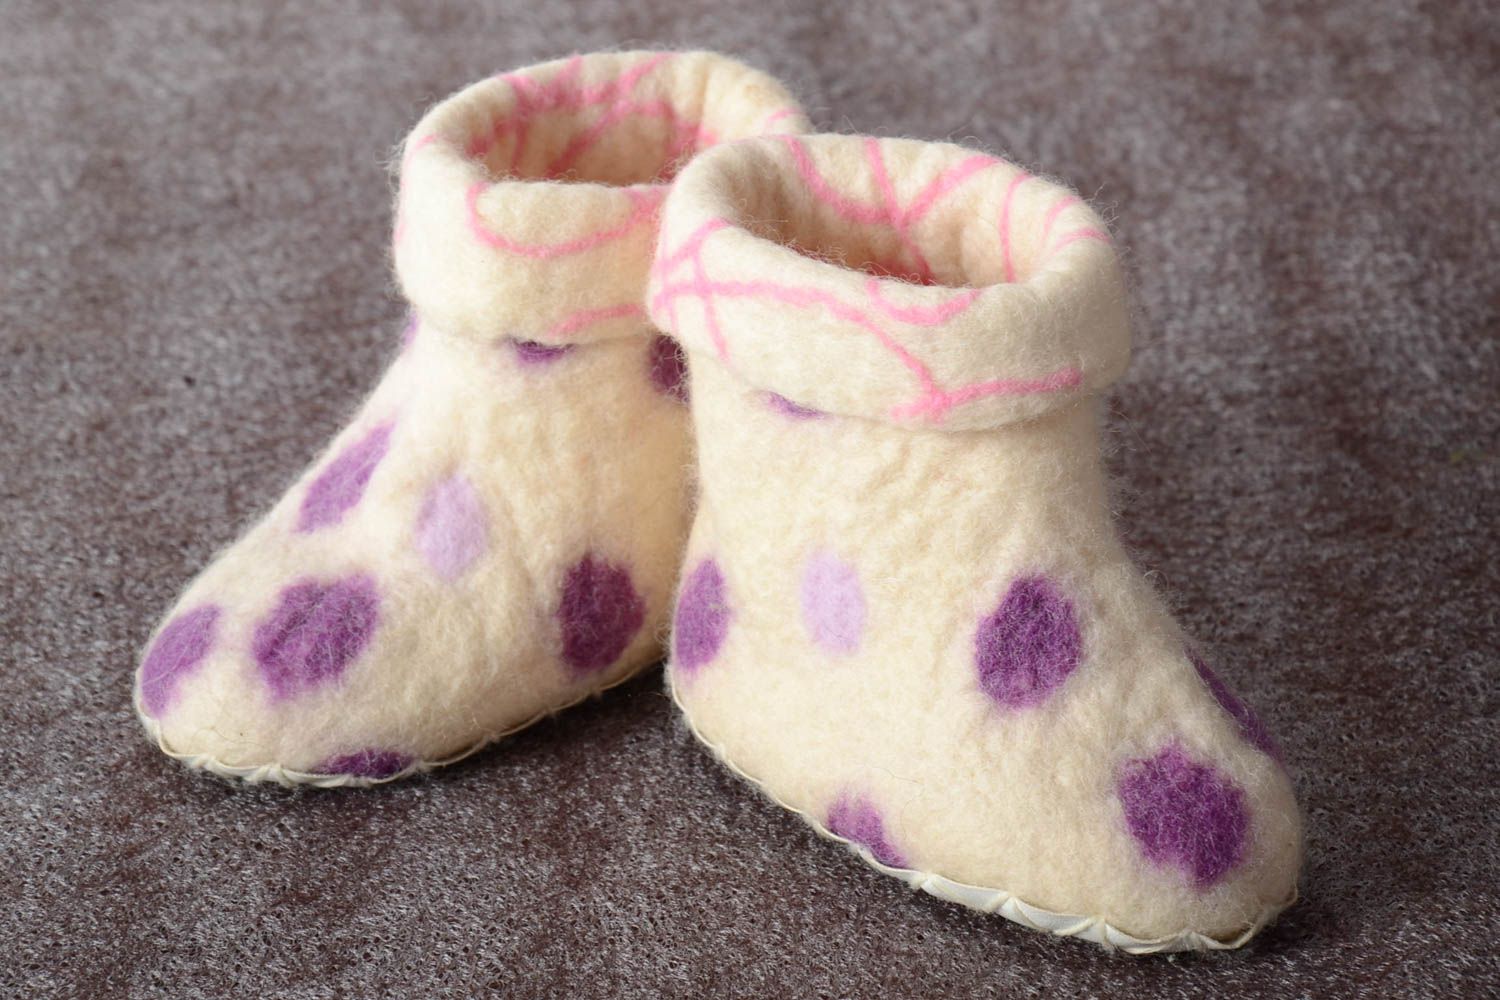 Handmade slippers designer slippers warm slippers felting slippers gift ideas photo 1